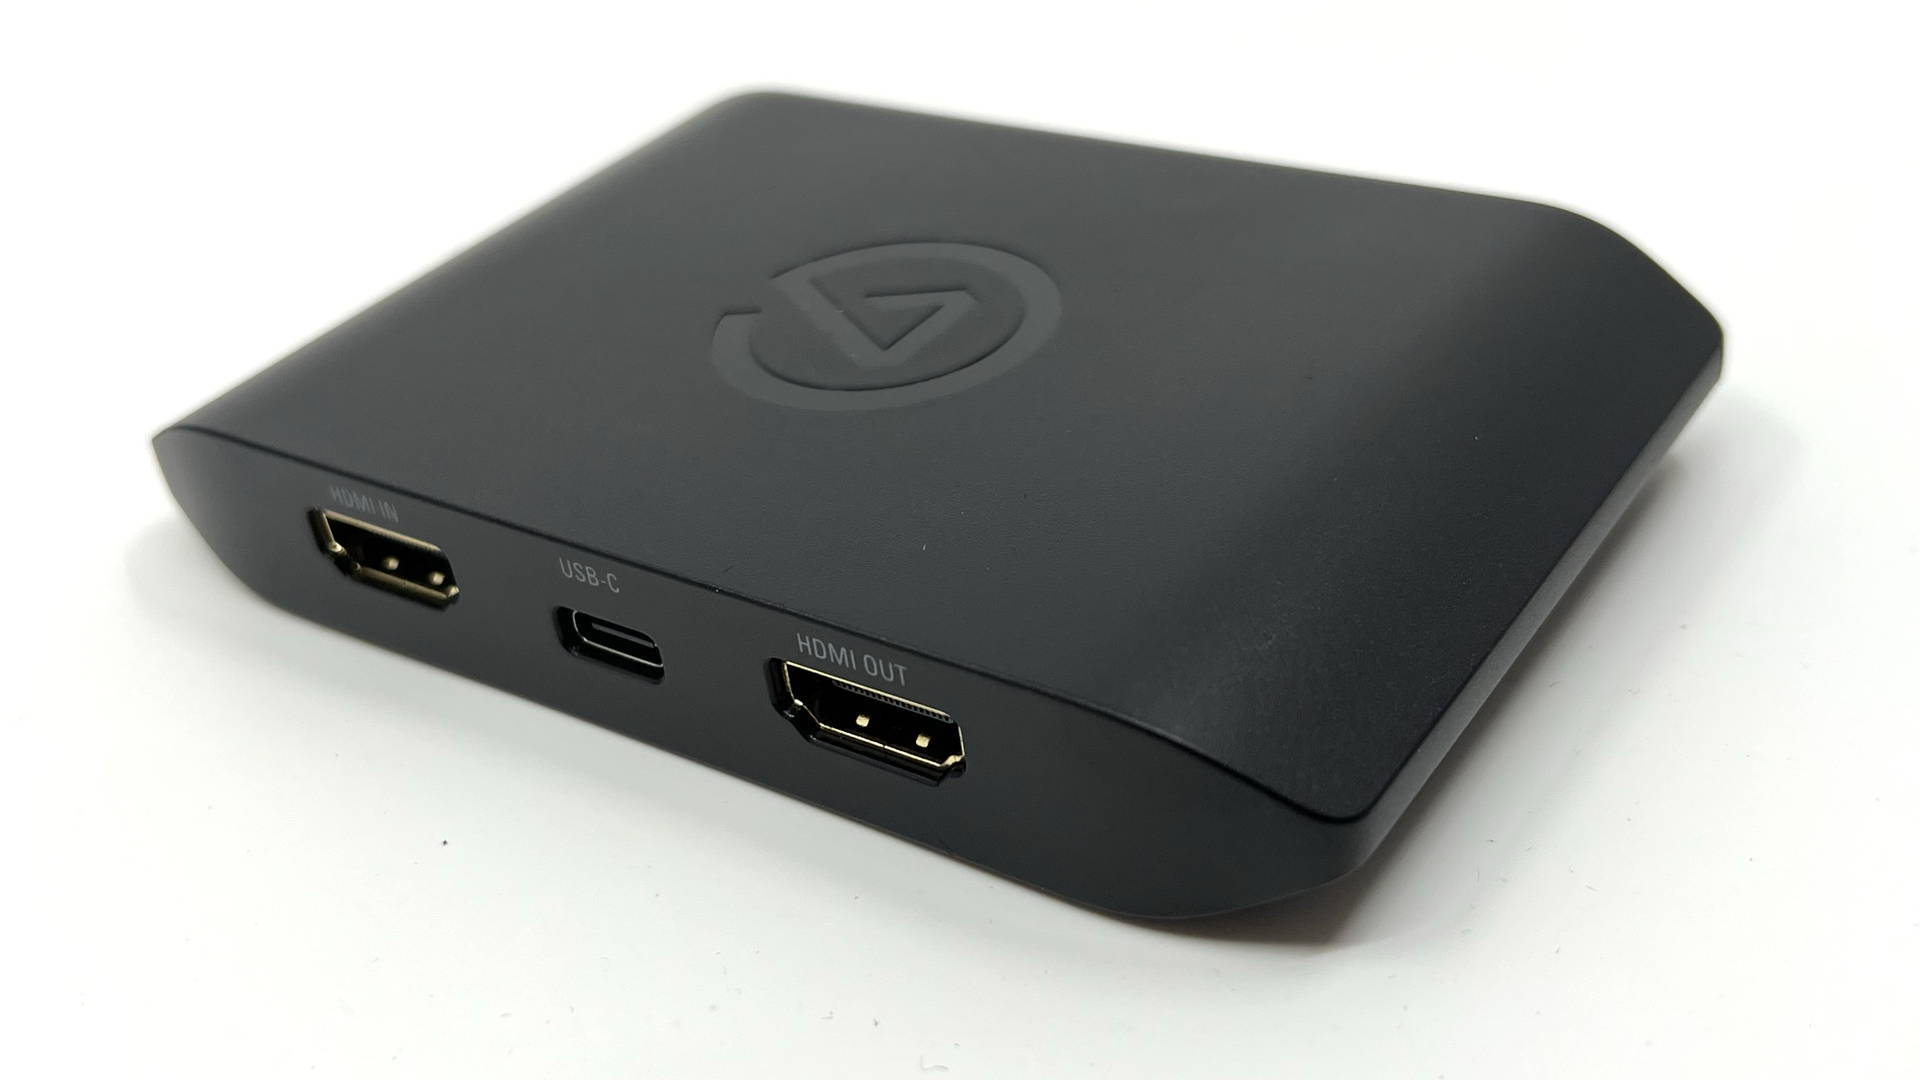 Test Elgato HD60 X : le meilleur boîtier de capture vidéo pour la PS5 et  Xbox Series X